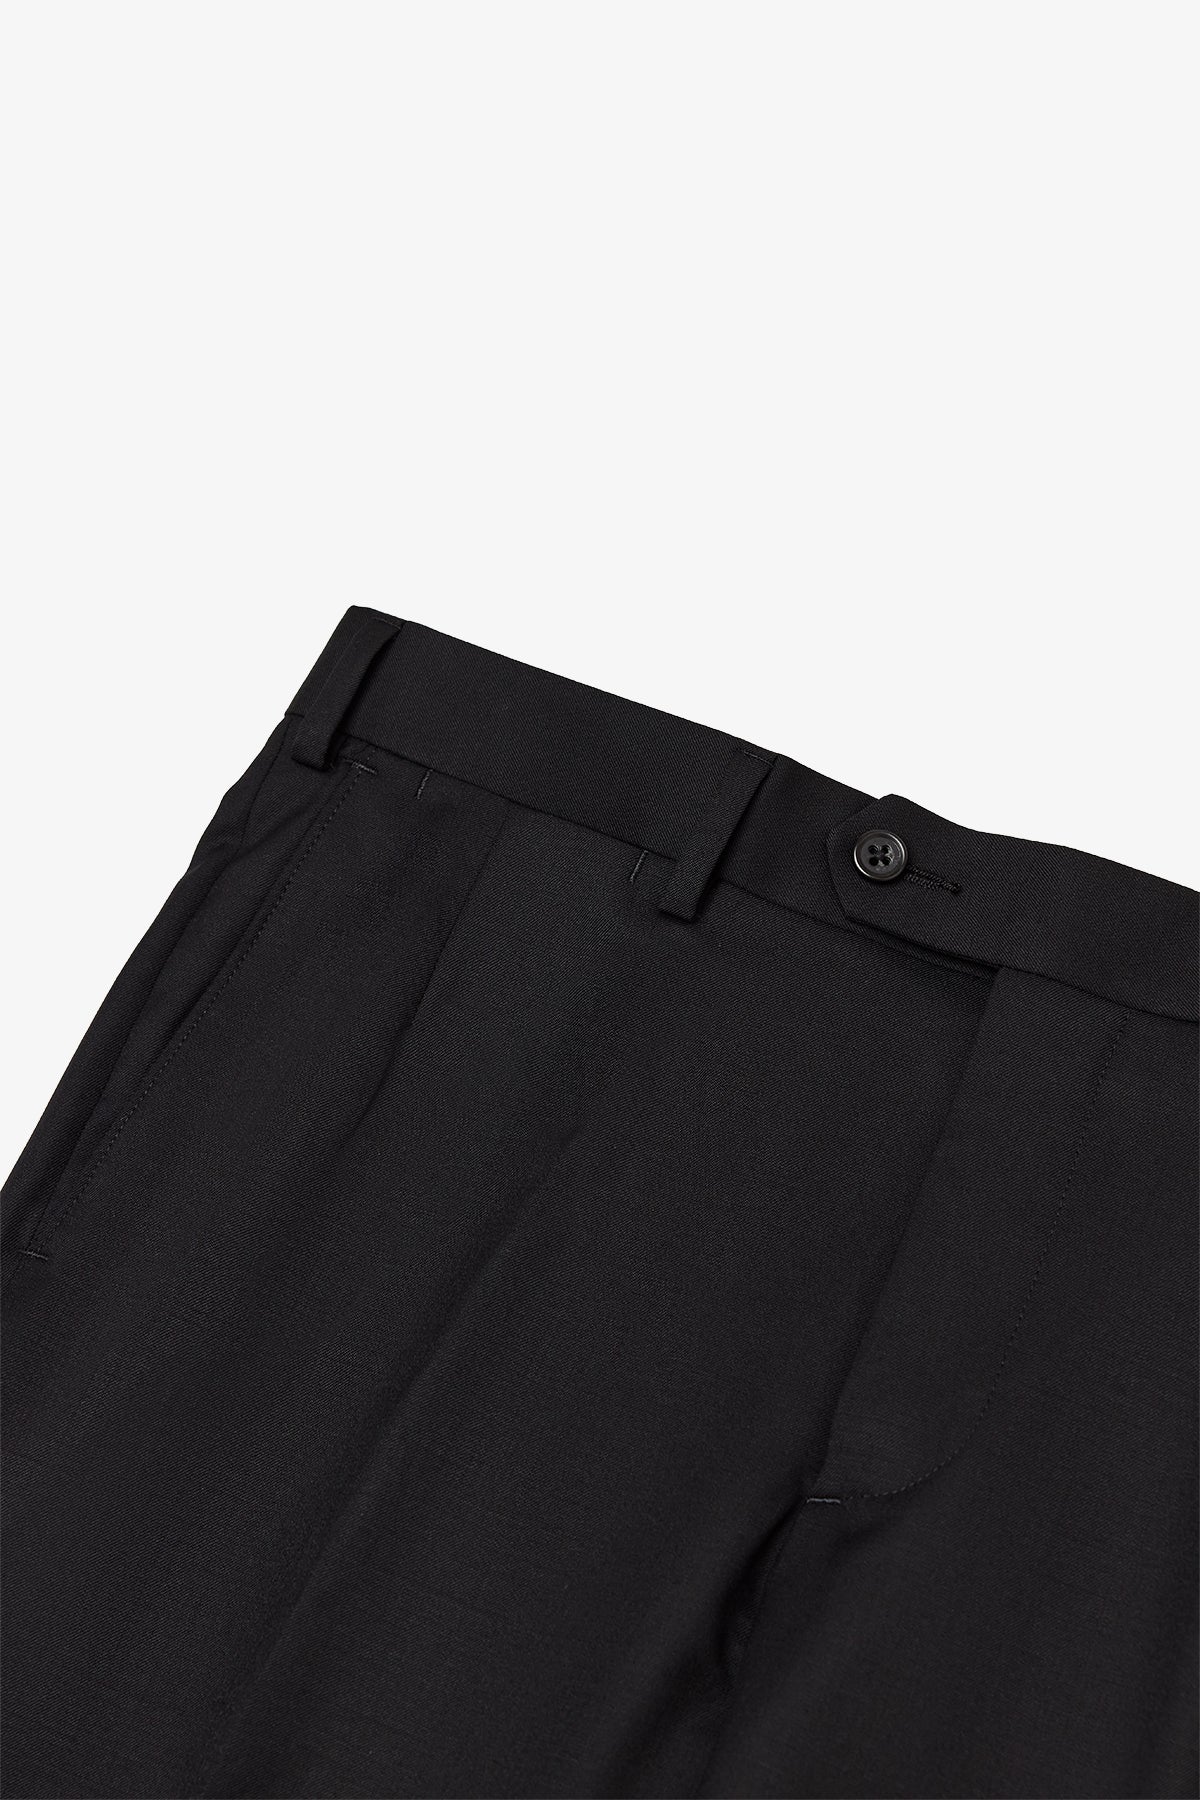 Montclair - Black Trouser